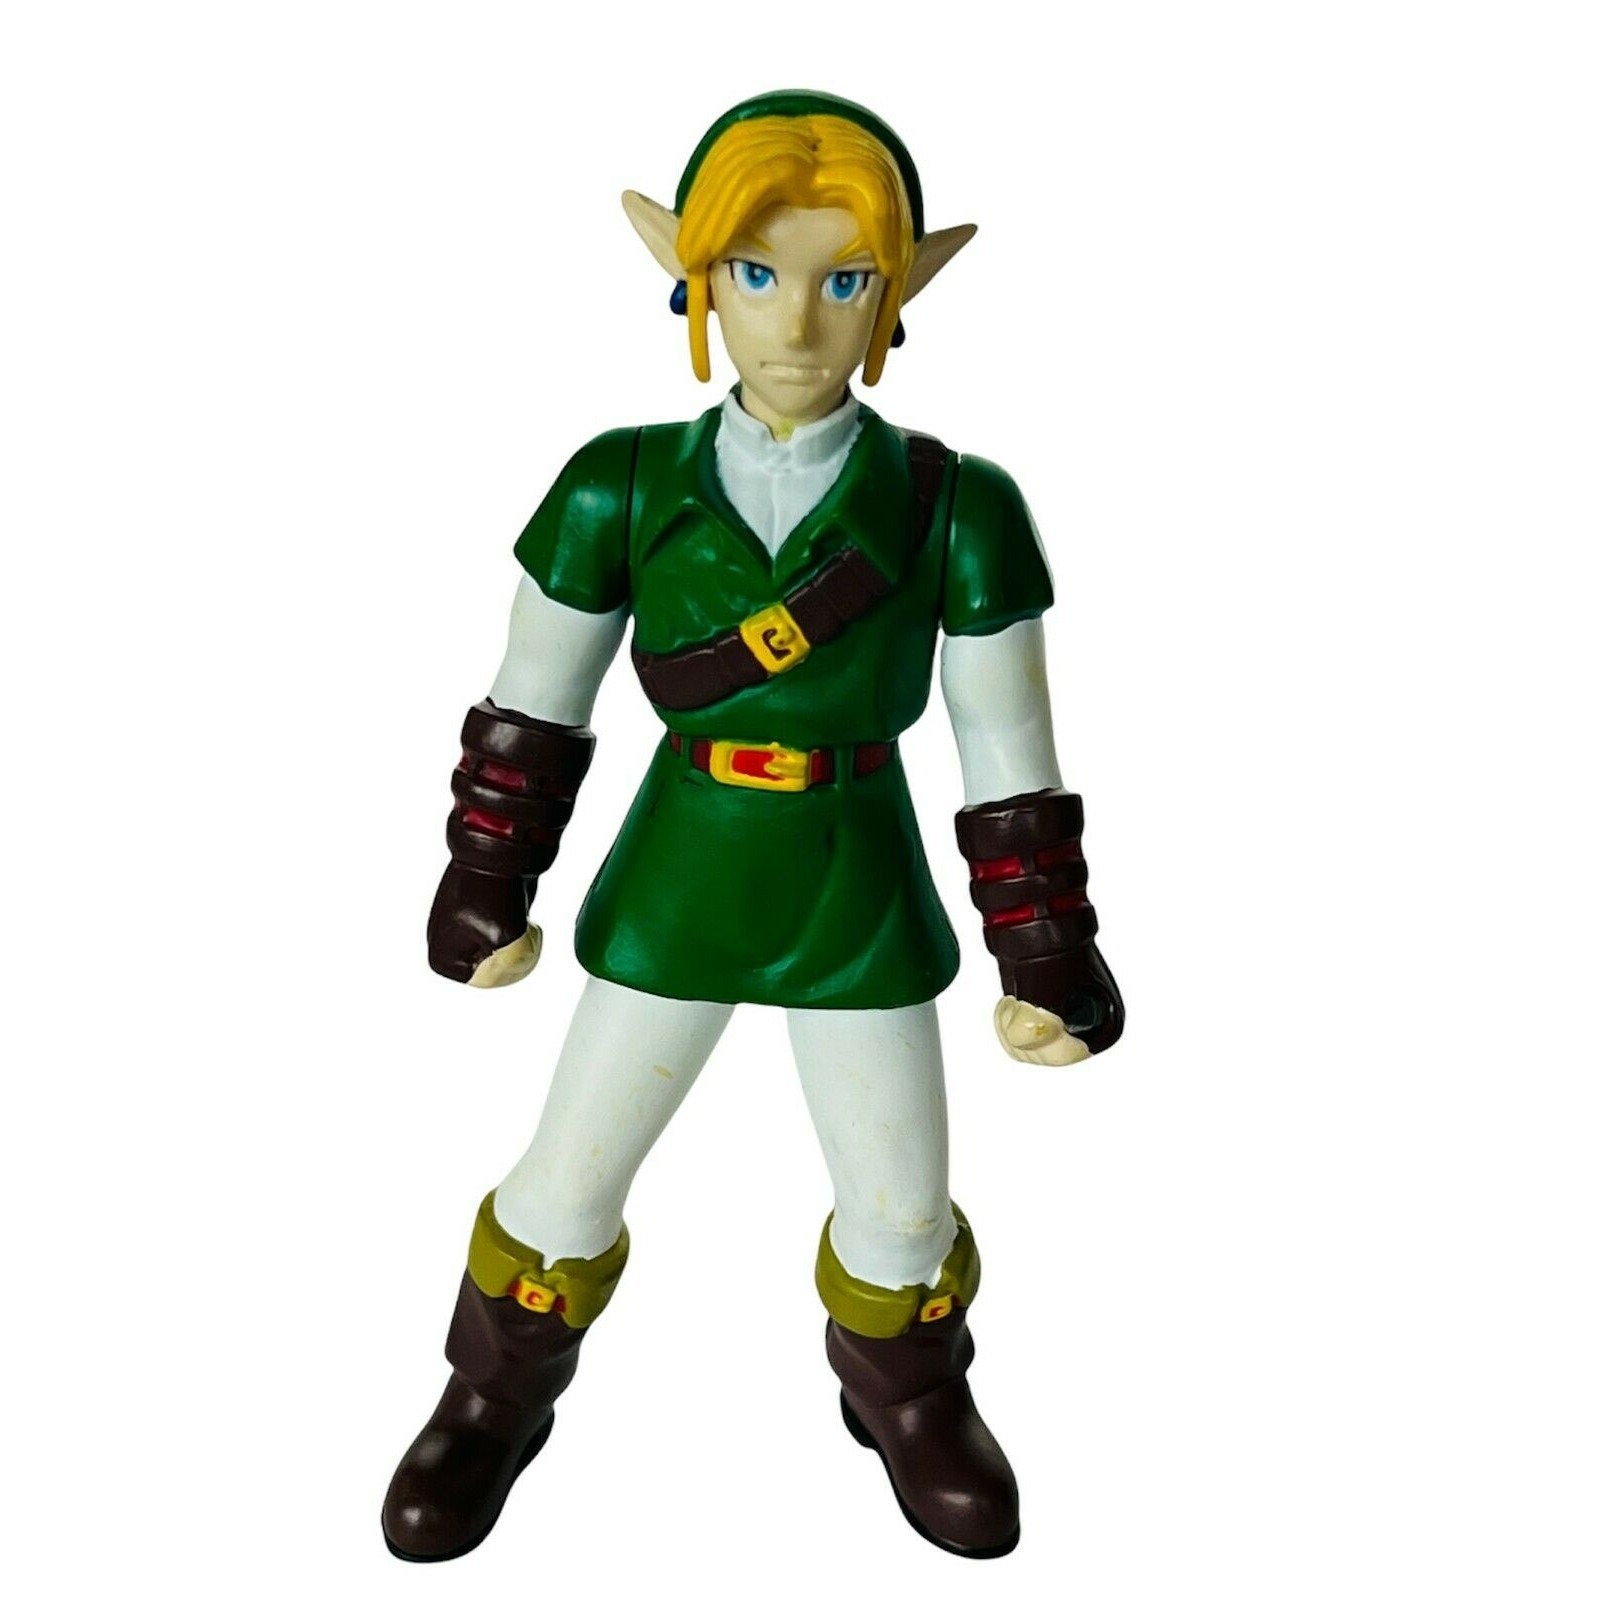 Legend of Zelda Link Action Figure BD&A Ocarina Vtg Nintendo 64 Video Game  Toy 